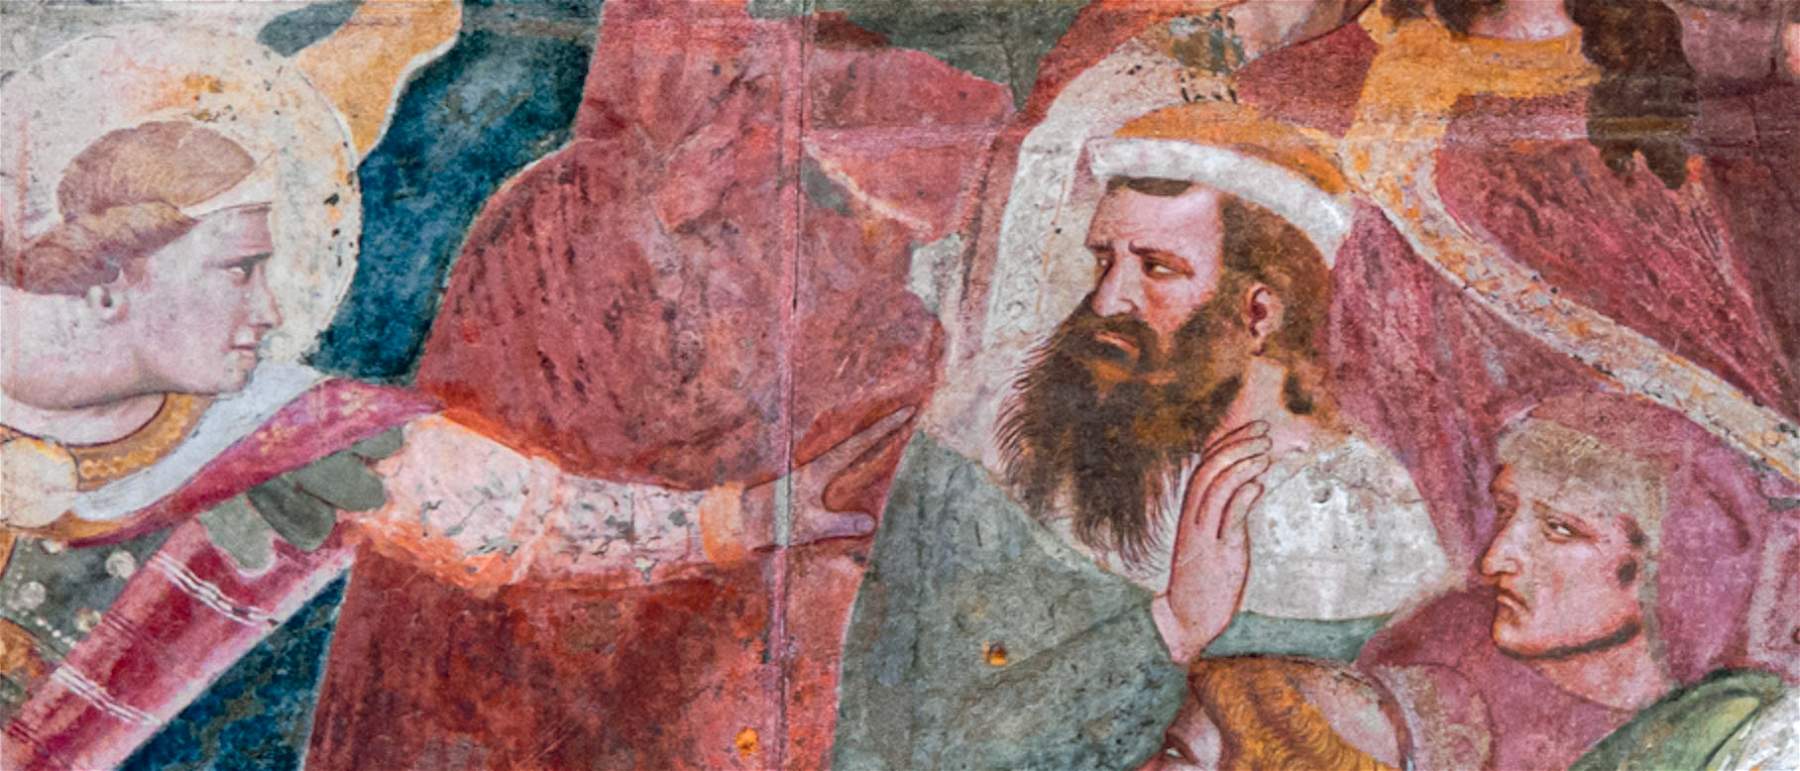 C'è un ritratto di Dante Alighieri negli affreschi di Buffalmacco nel Camposanto di Pisa?